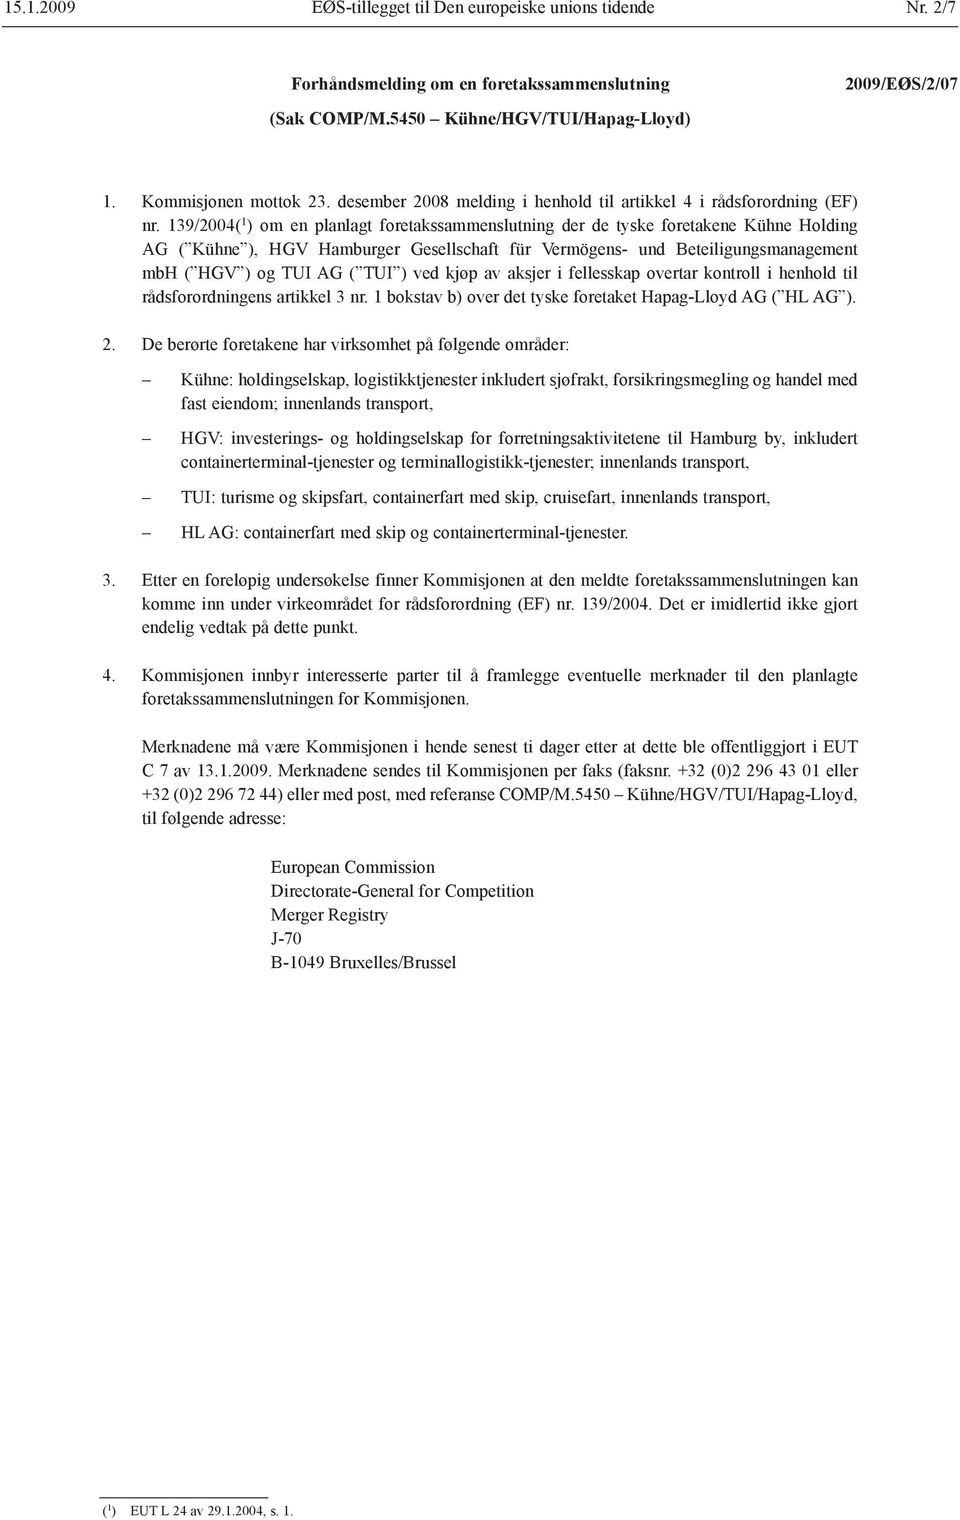 139/2004( 1 ) om en planlagt foretakssammenslutning der de tyske foretakene Kühne Holding AG ( Kühne ), HGV Hamburger Gesellschaft für Vermögens- und Beteiligungsmanagement mbh ( HGV ) og TUI AG (